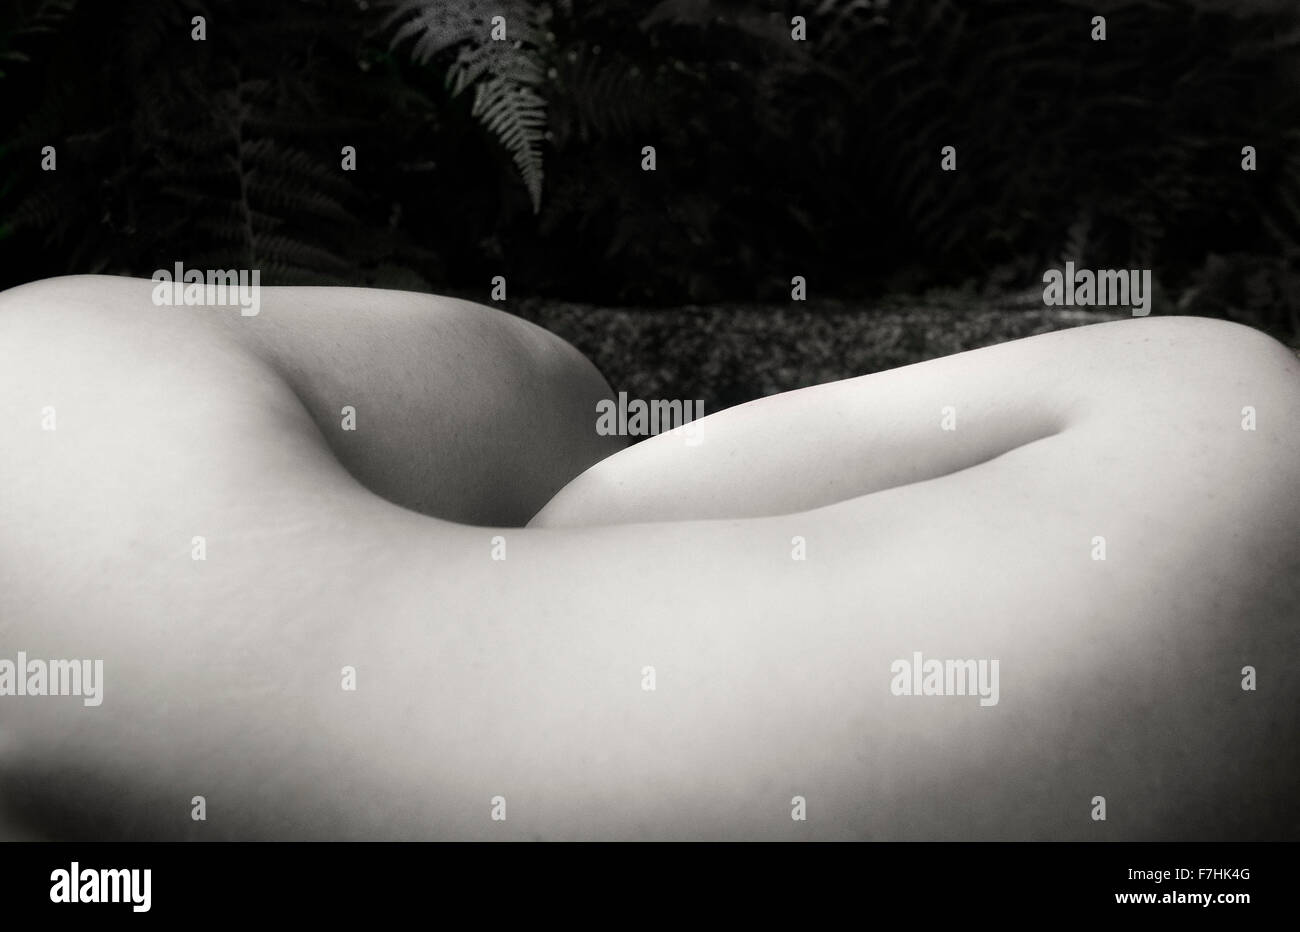 Femme nue couchée avec retour à l'appareil photo Banque D'Images